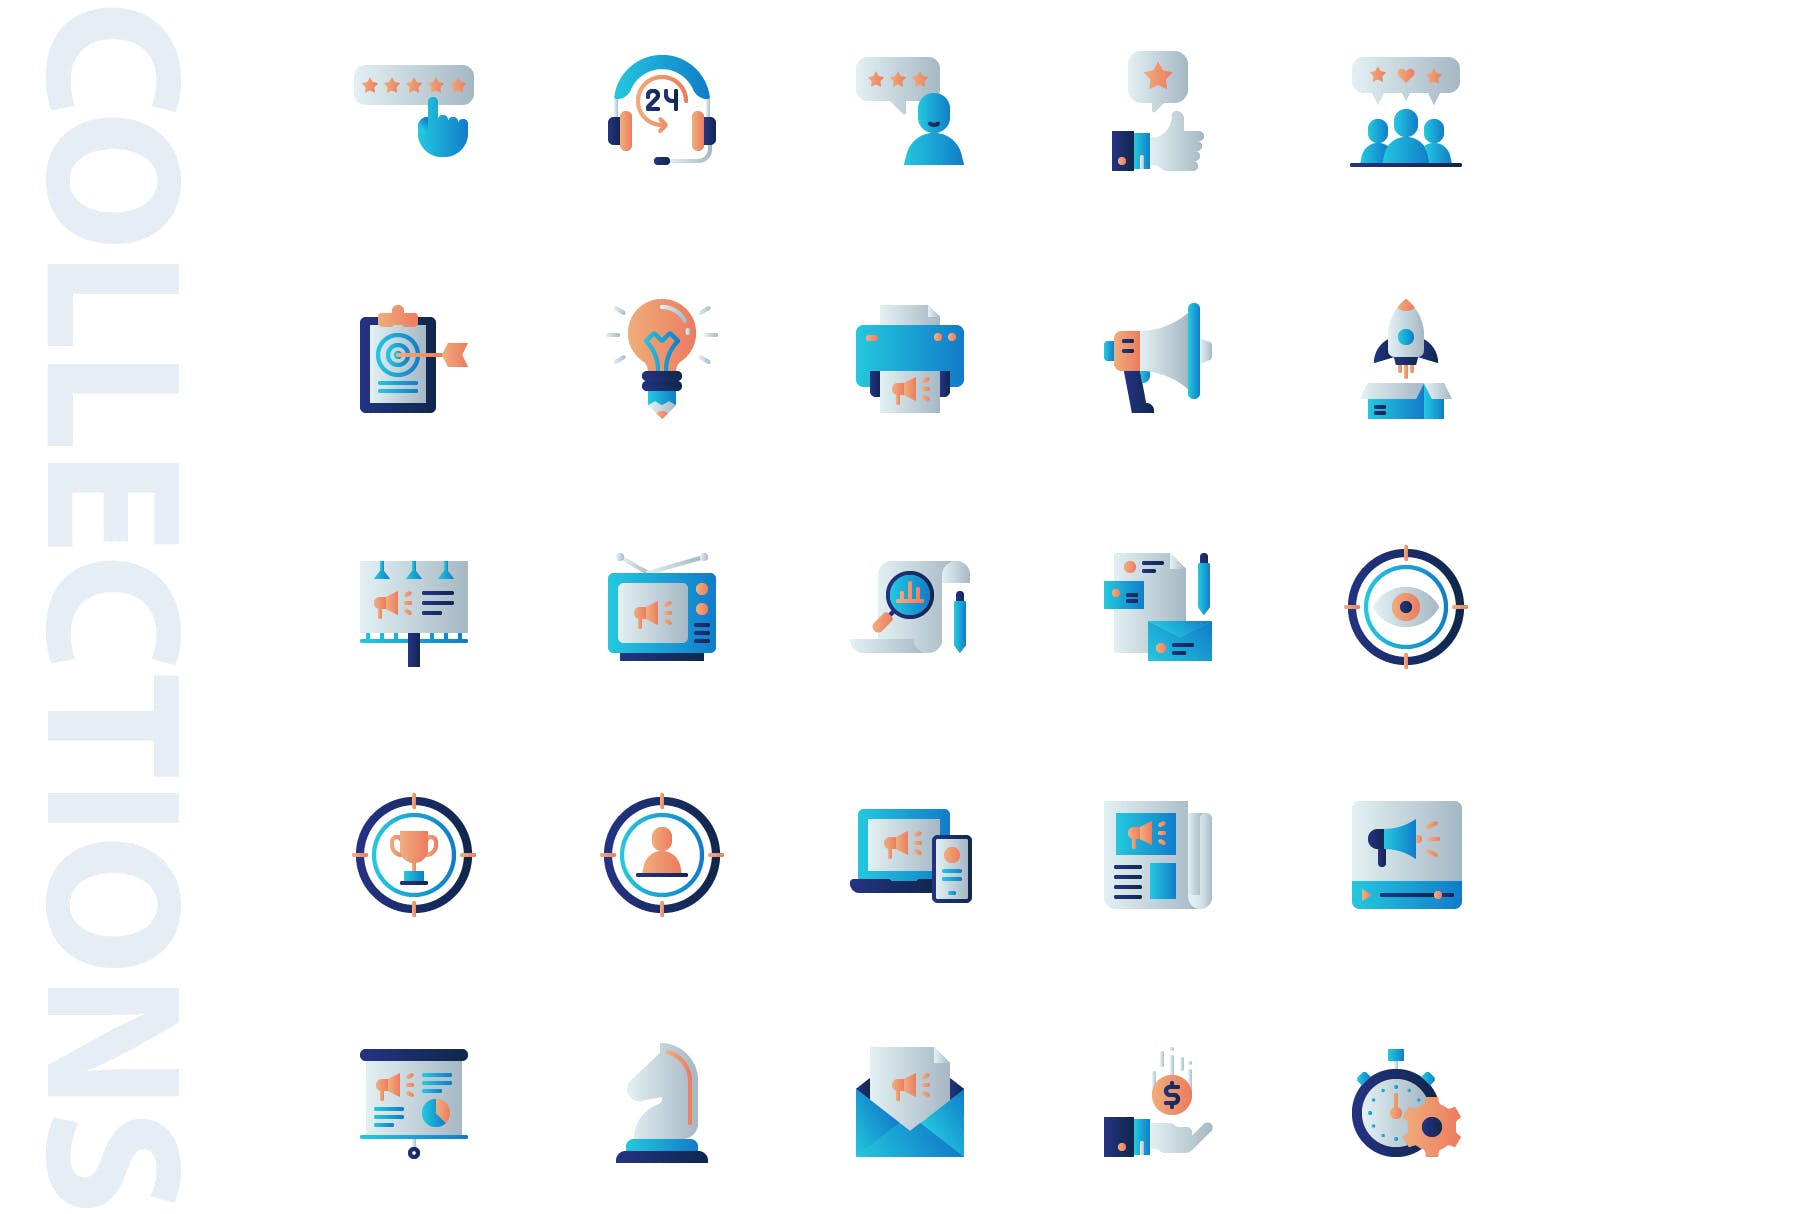 25枚市场营销主题扁平设计风格矢量蚂蚁素材精选图标 Marketing Flat Icons插图(3)